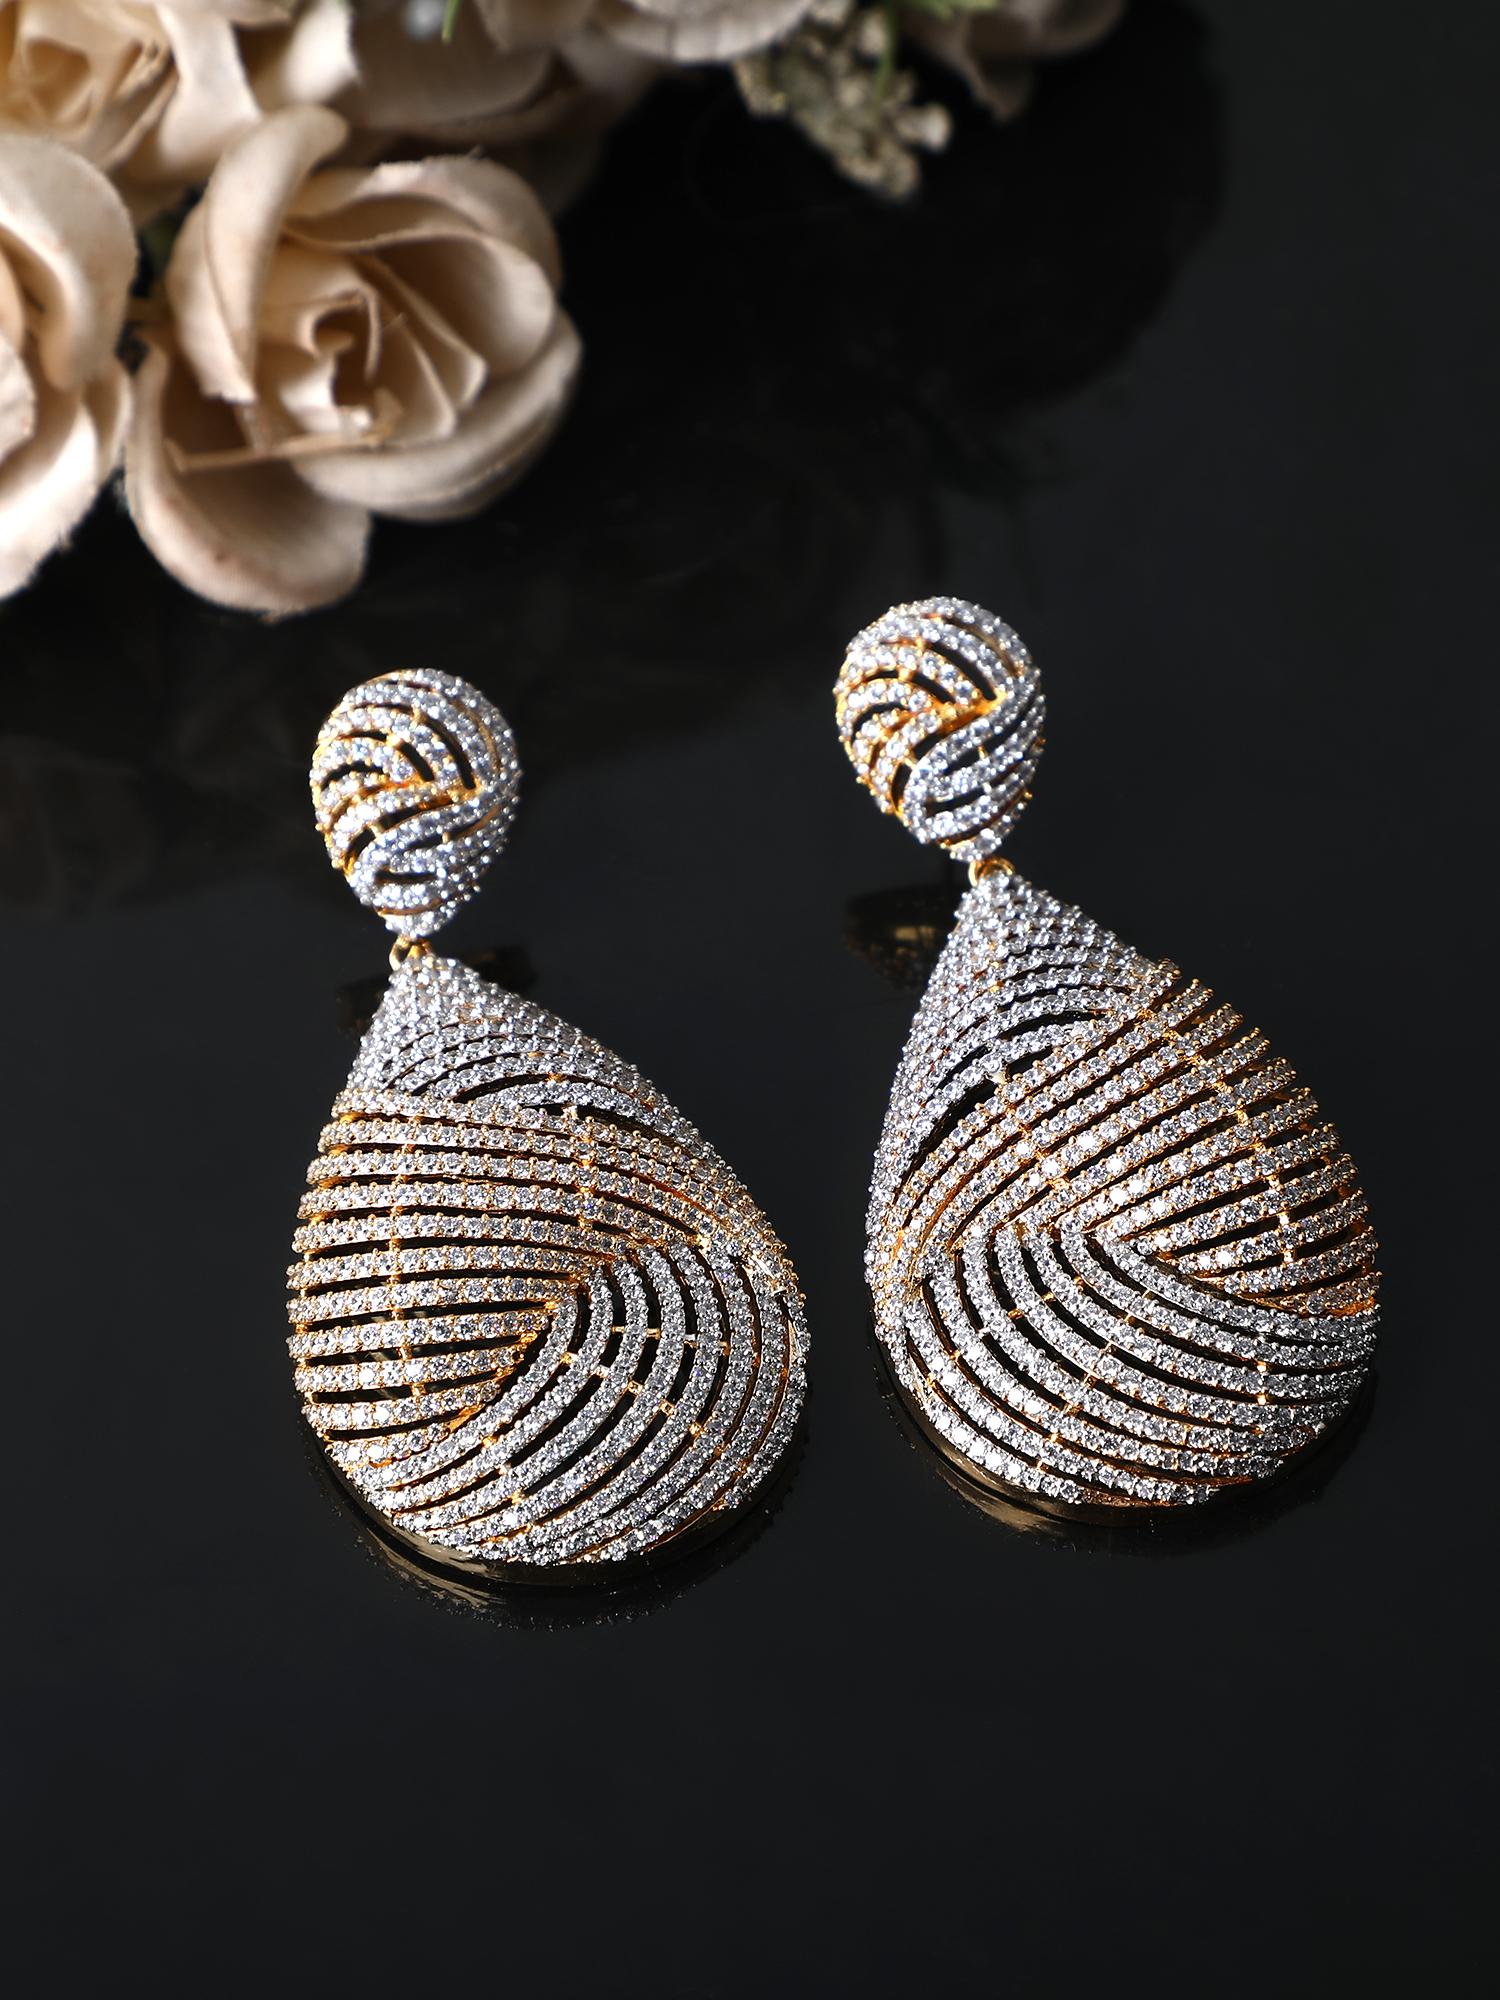 Buy White  Rose Gold Earrings for Women by Priyaasi Online  Ajiocom